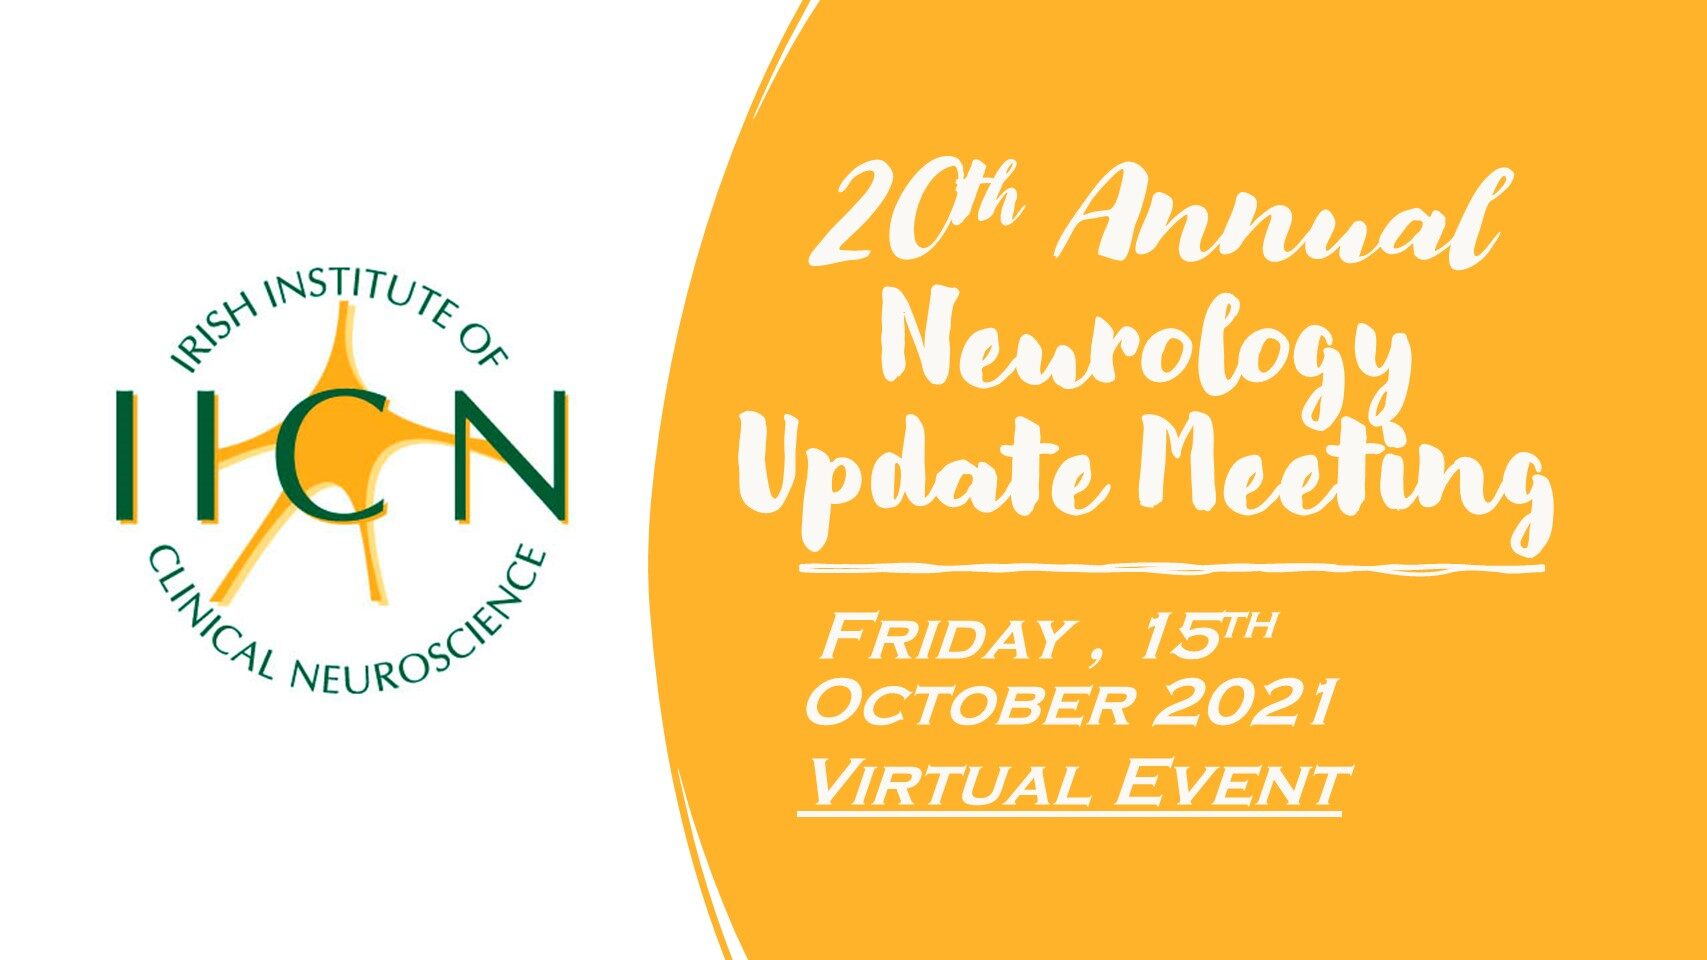 Neurology Update Meeting 2021